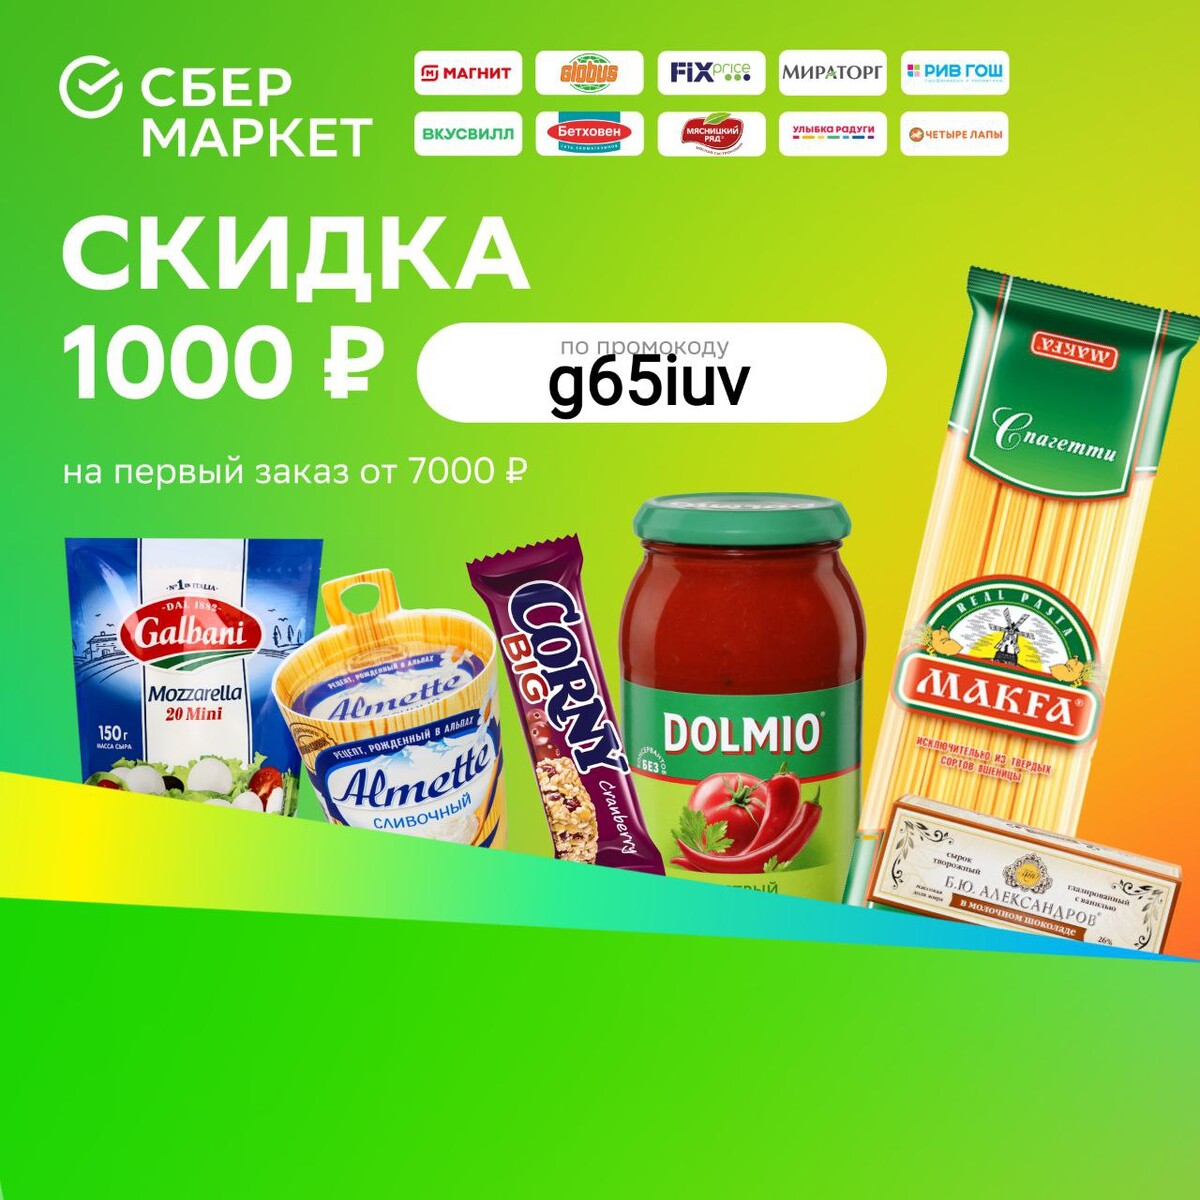 Сбермаркет 1000 руб на первый заказ. Сбермаркет на первый заказ скидка 1000 рублей